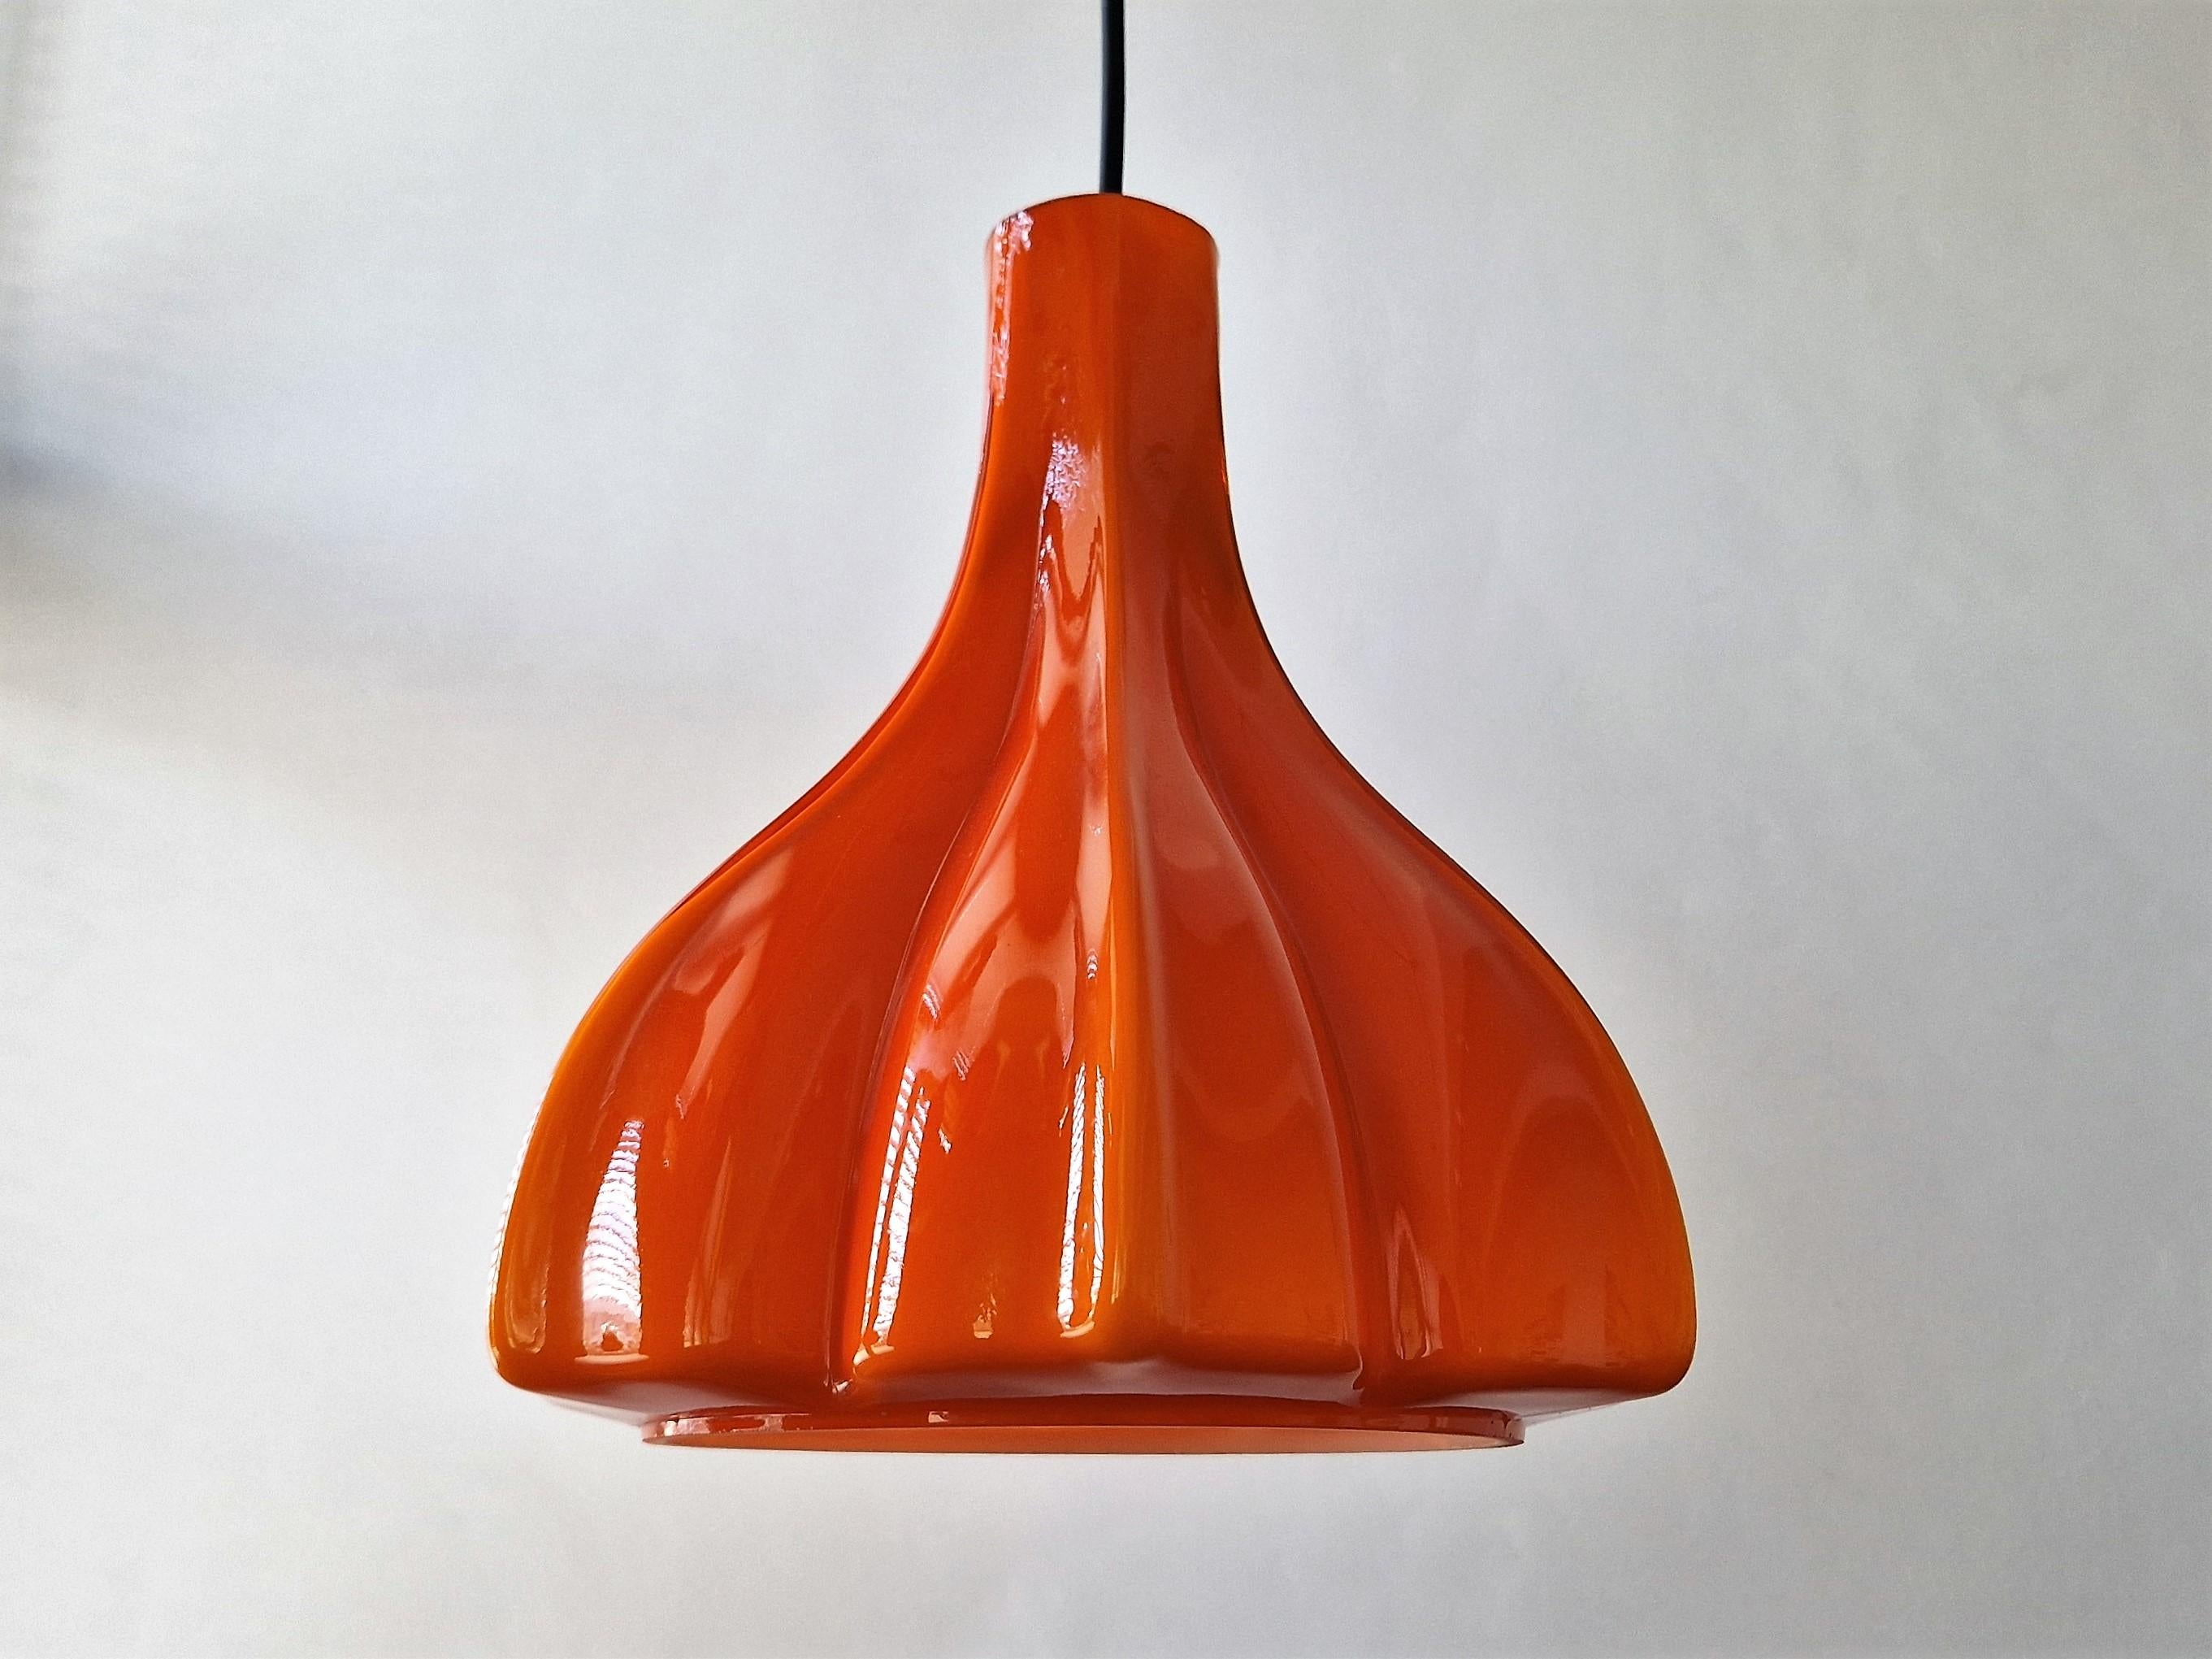 Cette magnifique lampe suspendue en forme de fleur a été fabriquée par le fabricant allemand Peill & Putzler. Elle est fabriquée en verre de Murano soufflé à la main à double couche, avec un extérieur orange et un intérieur blanc opale. Lorsqu'il